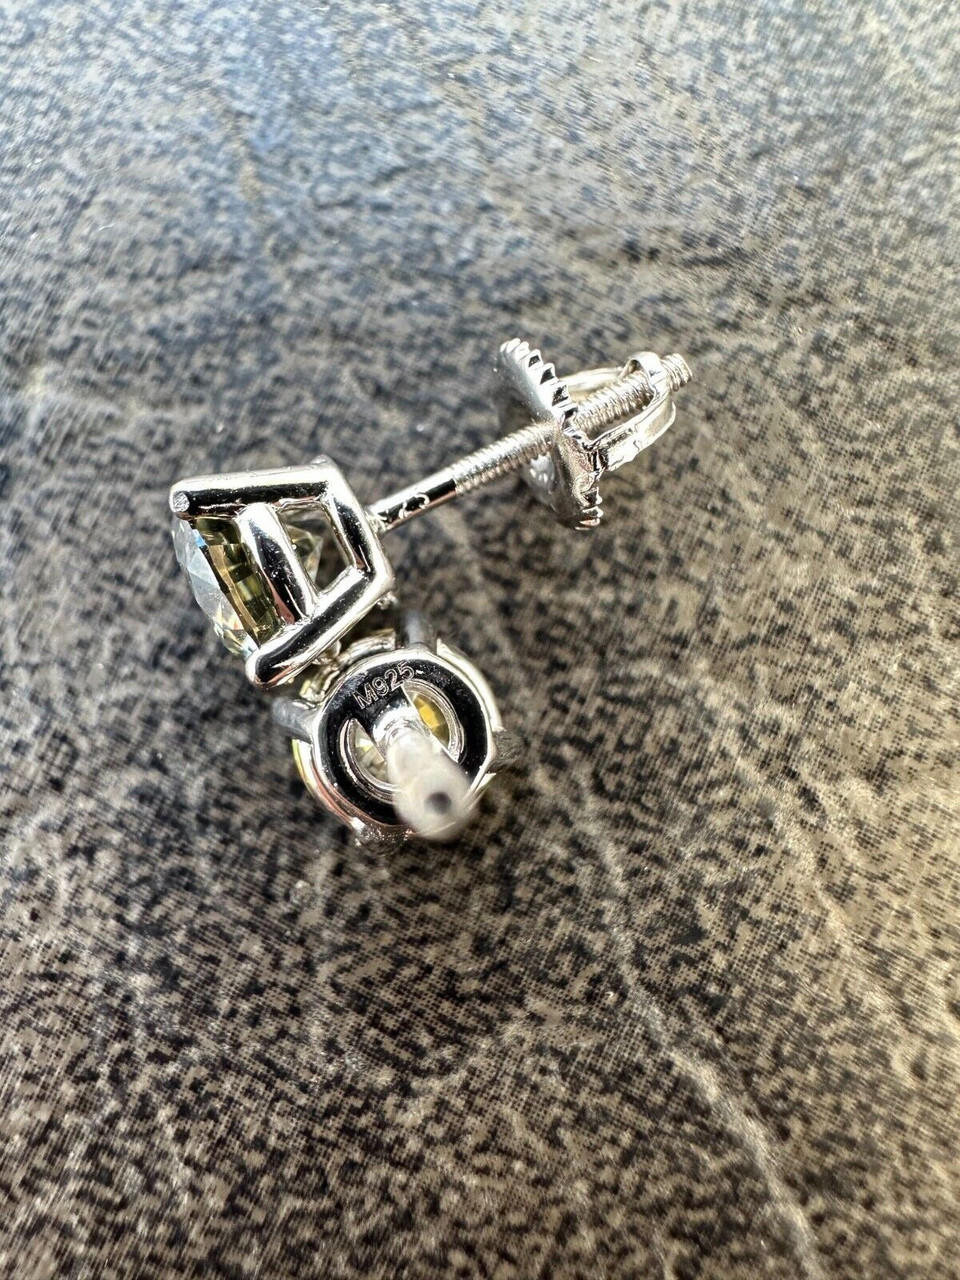 5mm Brilliant Cut Amethyst Ice CZ Screw Back Earrings Sterling Silver 